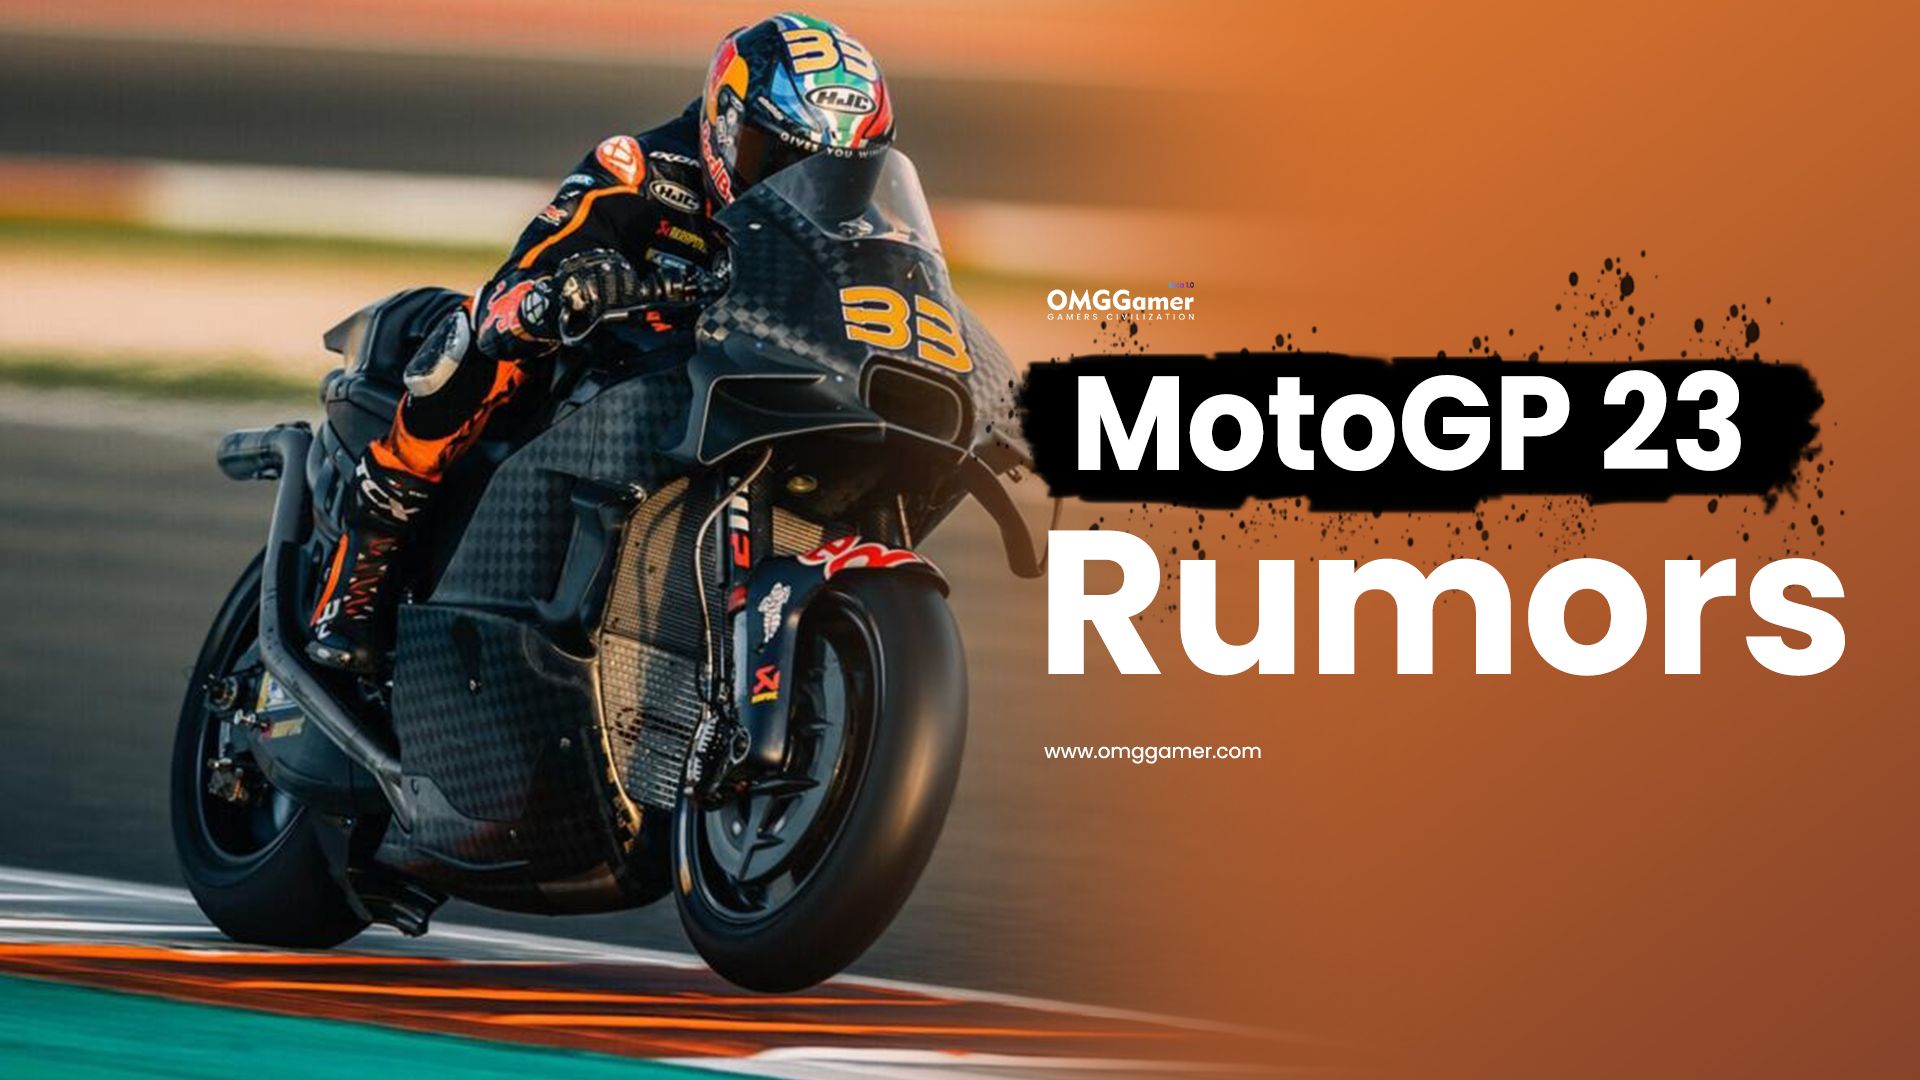 MotoGP 23 Rumors